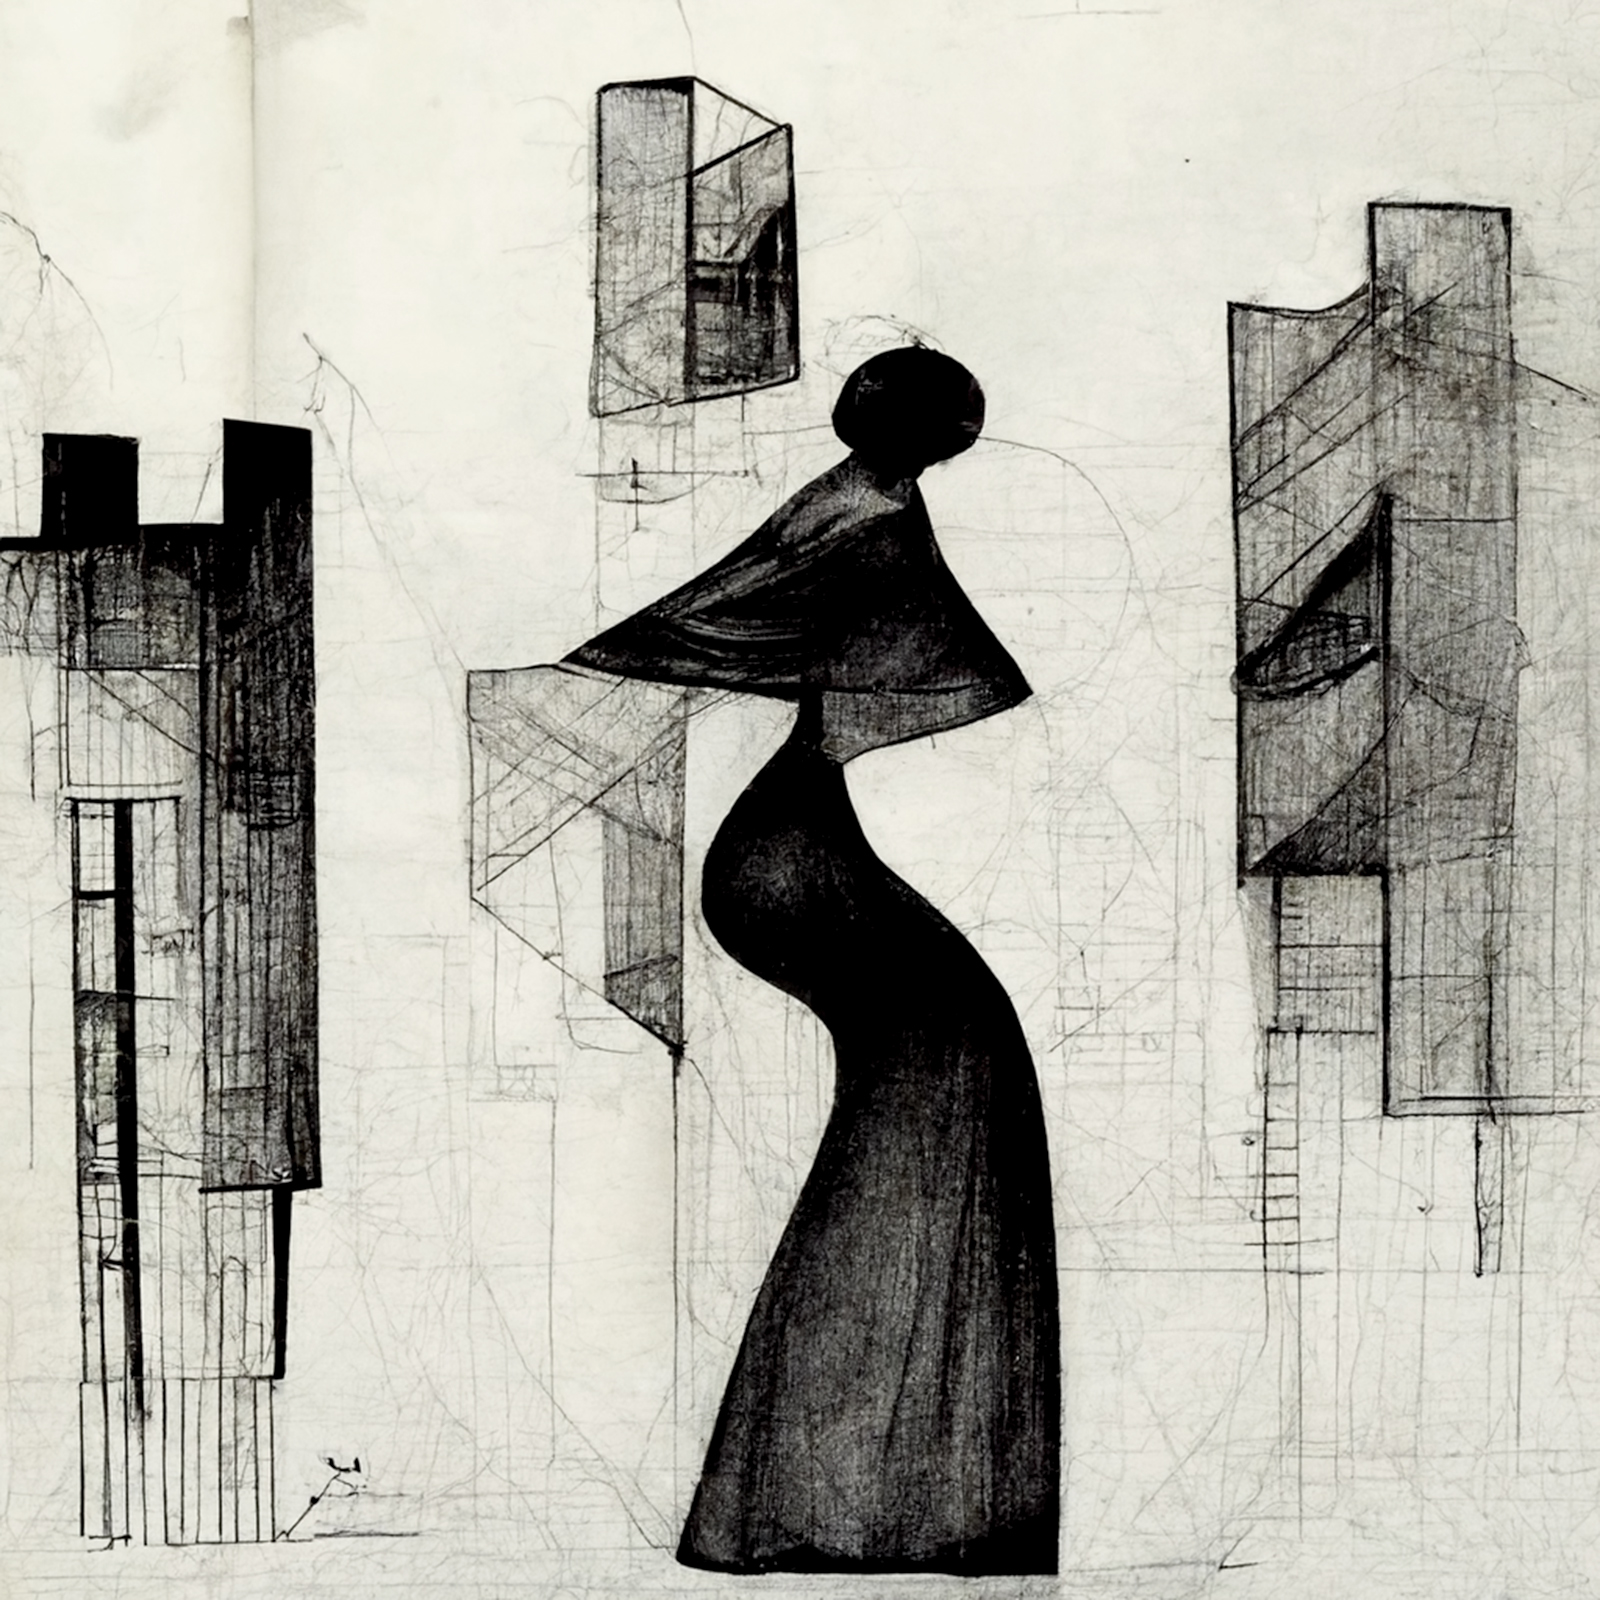 Archisearch Η Διάσταση του Γυναικείου Φύλου στην Αρχιτεκτονική | Ερευνητική εργασία από την Ειρήνη Μιχαέλα Σαπουνά